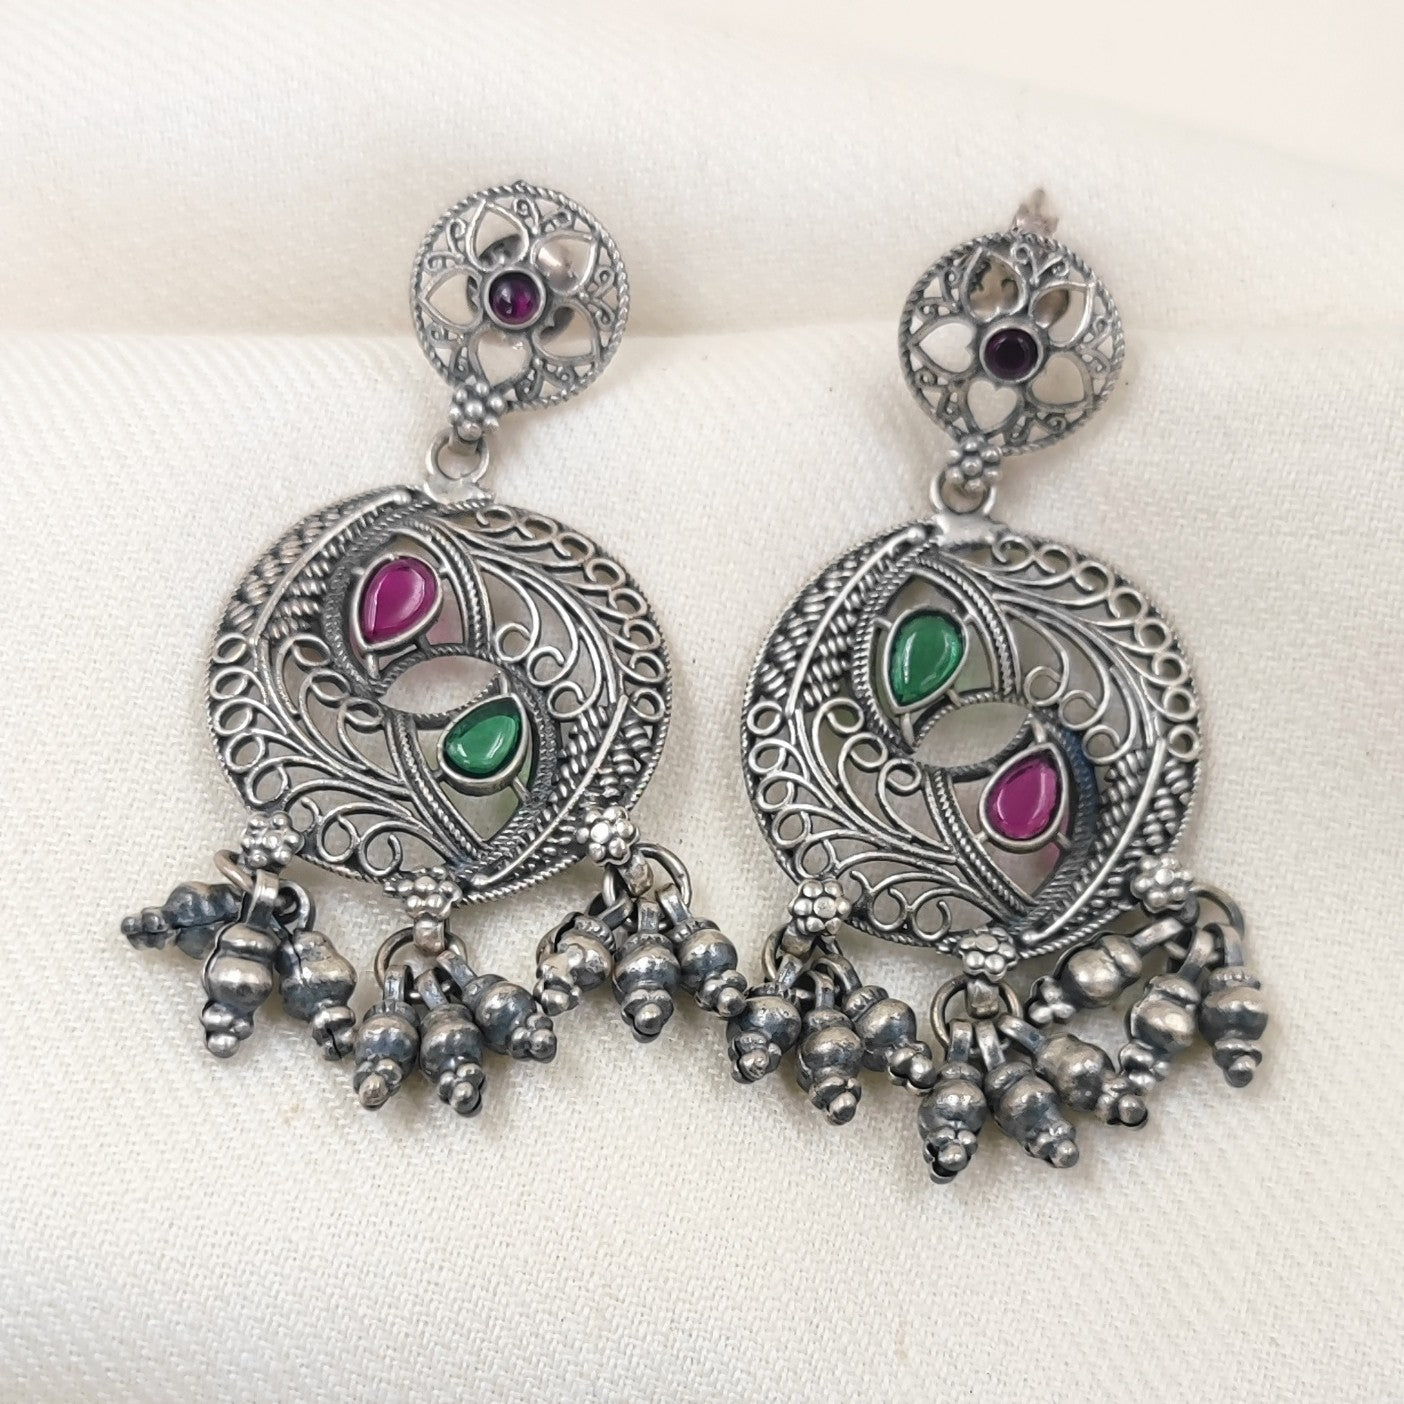 Silver Jewelry Earrings by Jauhri 92.5 Silver - Yin - Yang Earrings